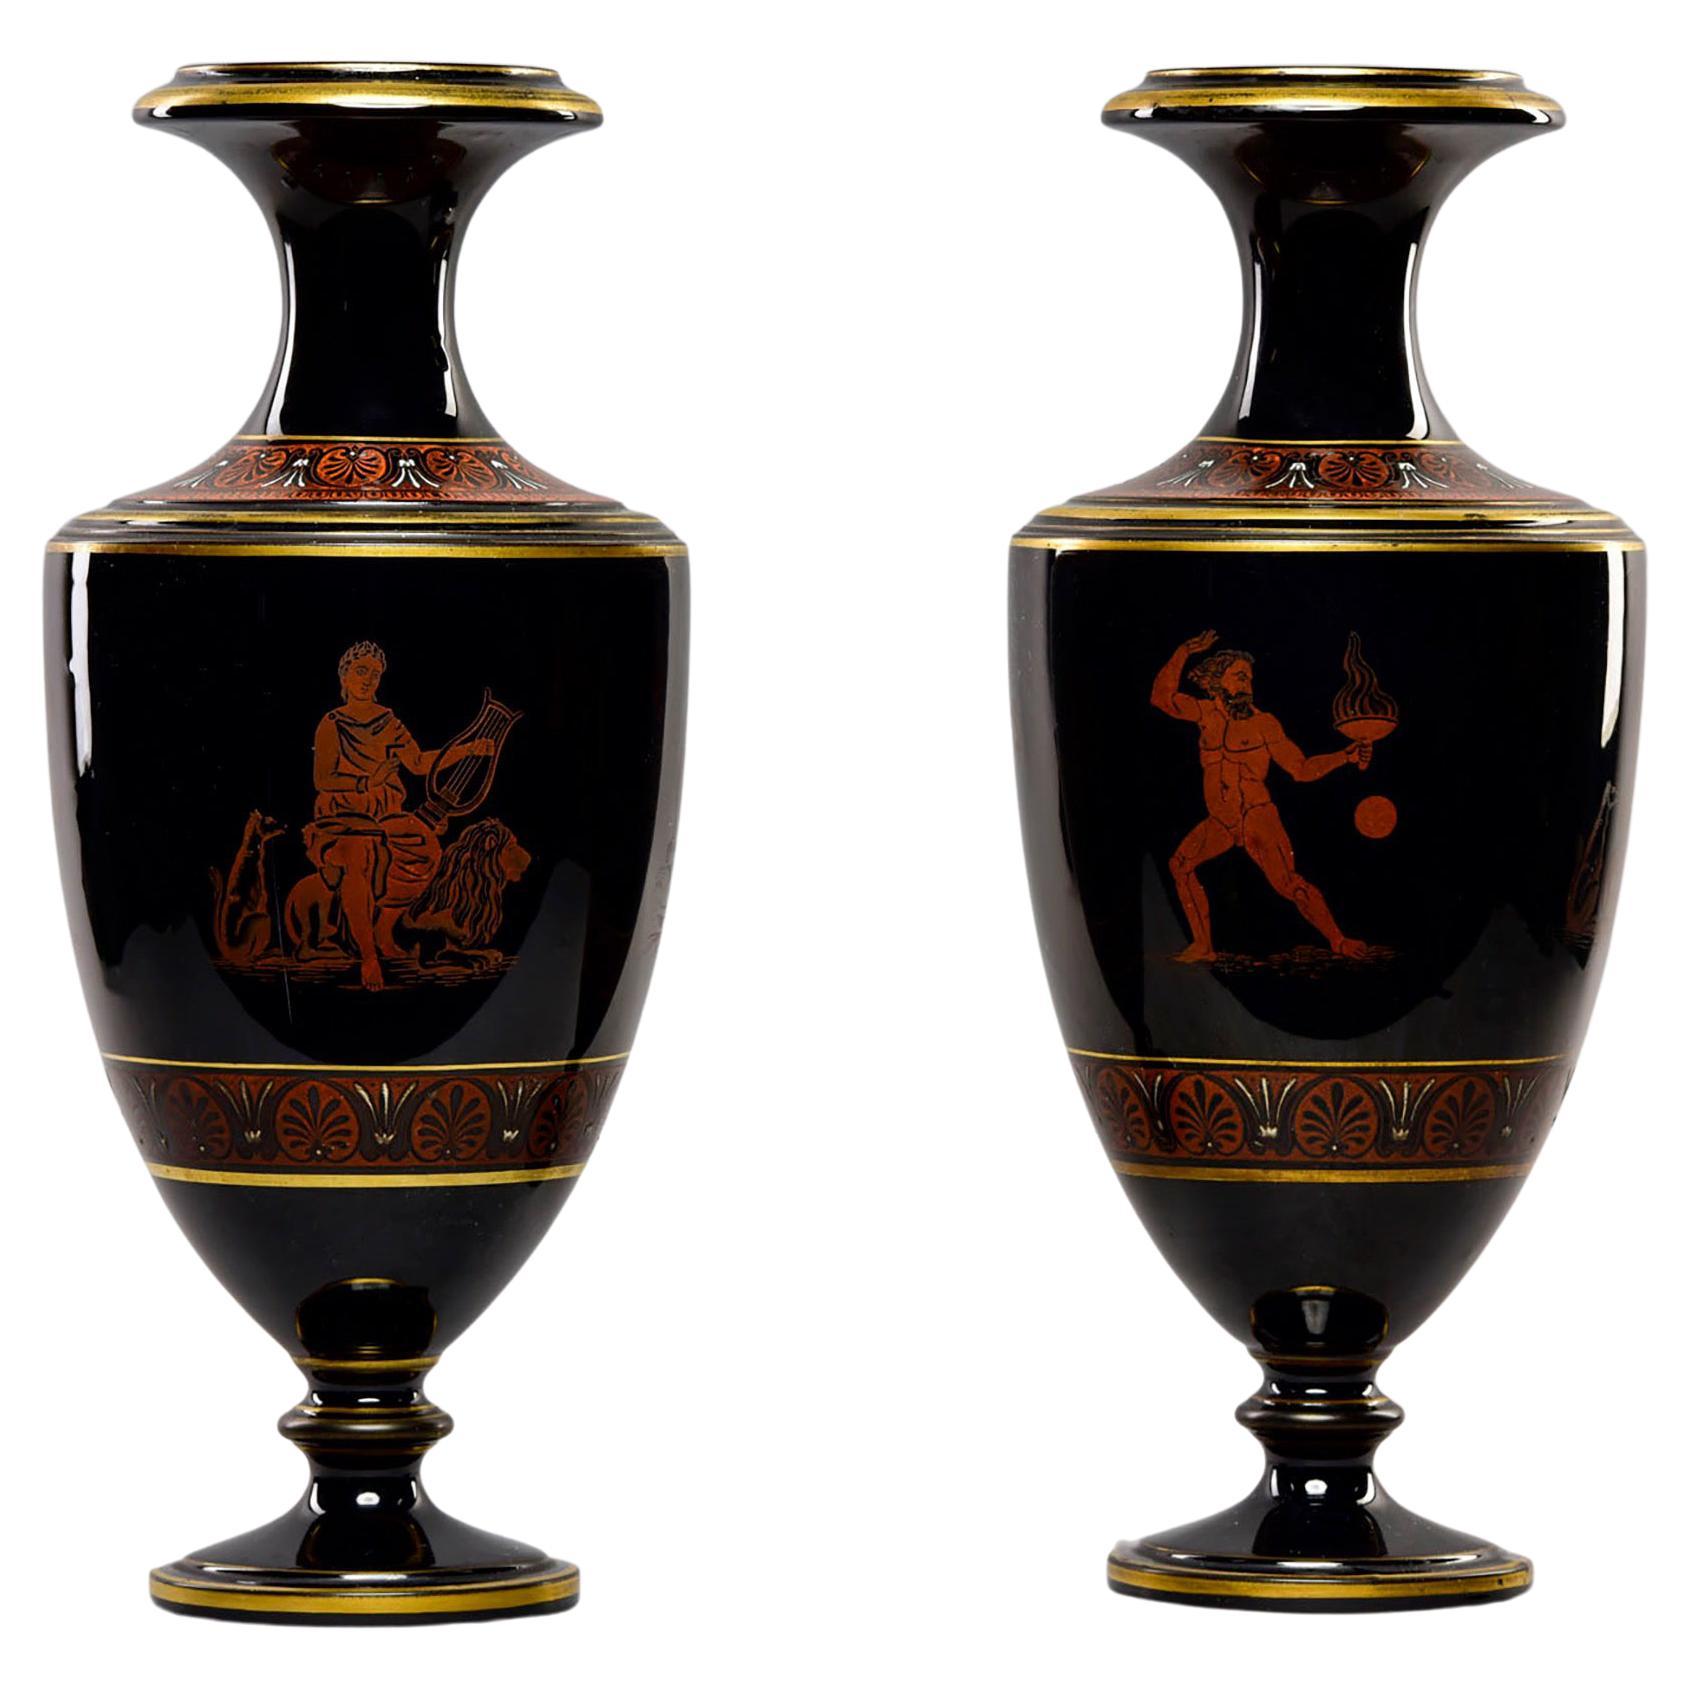 Paar neoklassizistische Vasen aus schwarzem Porzellan des späten 19. Jahrhunderts